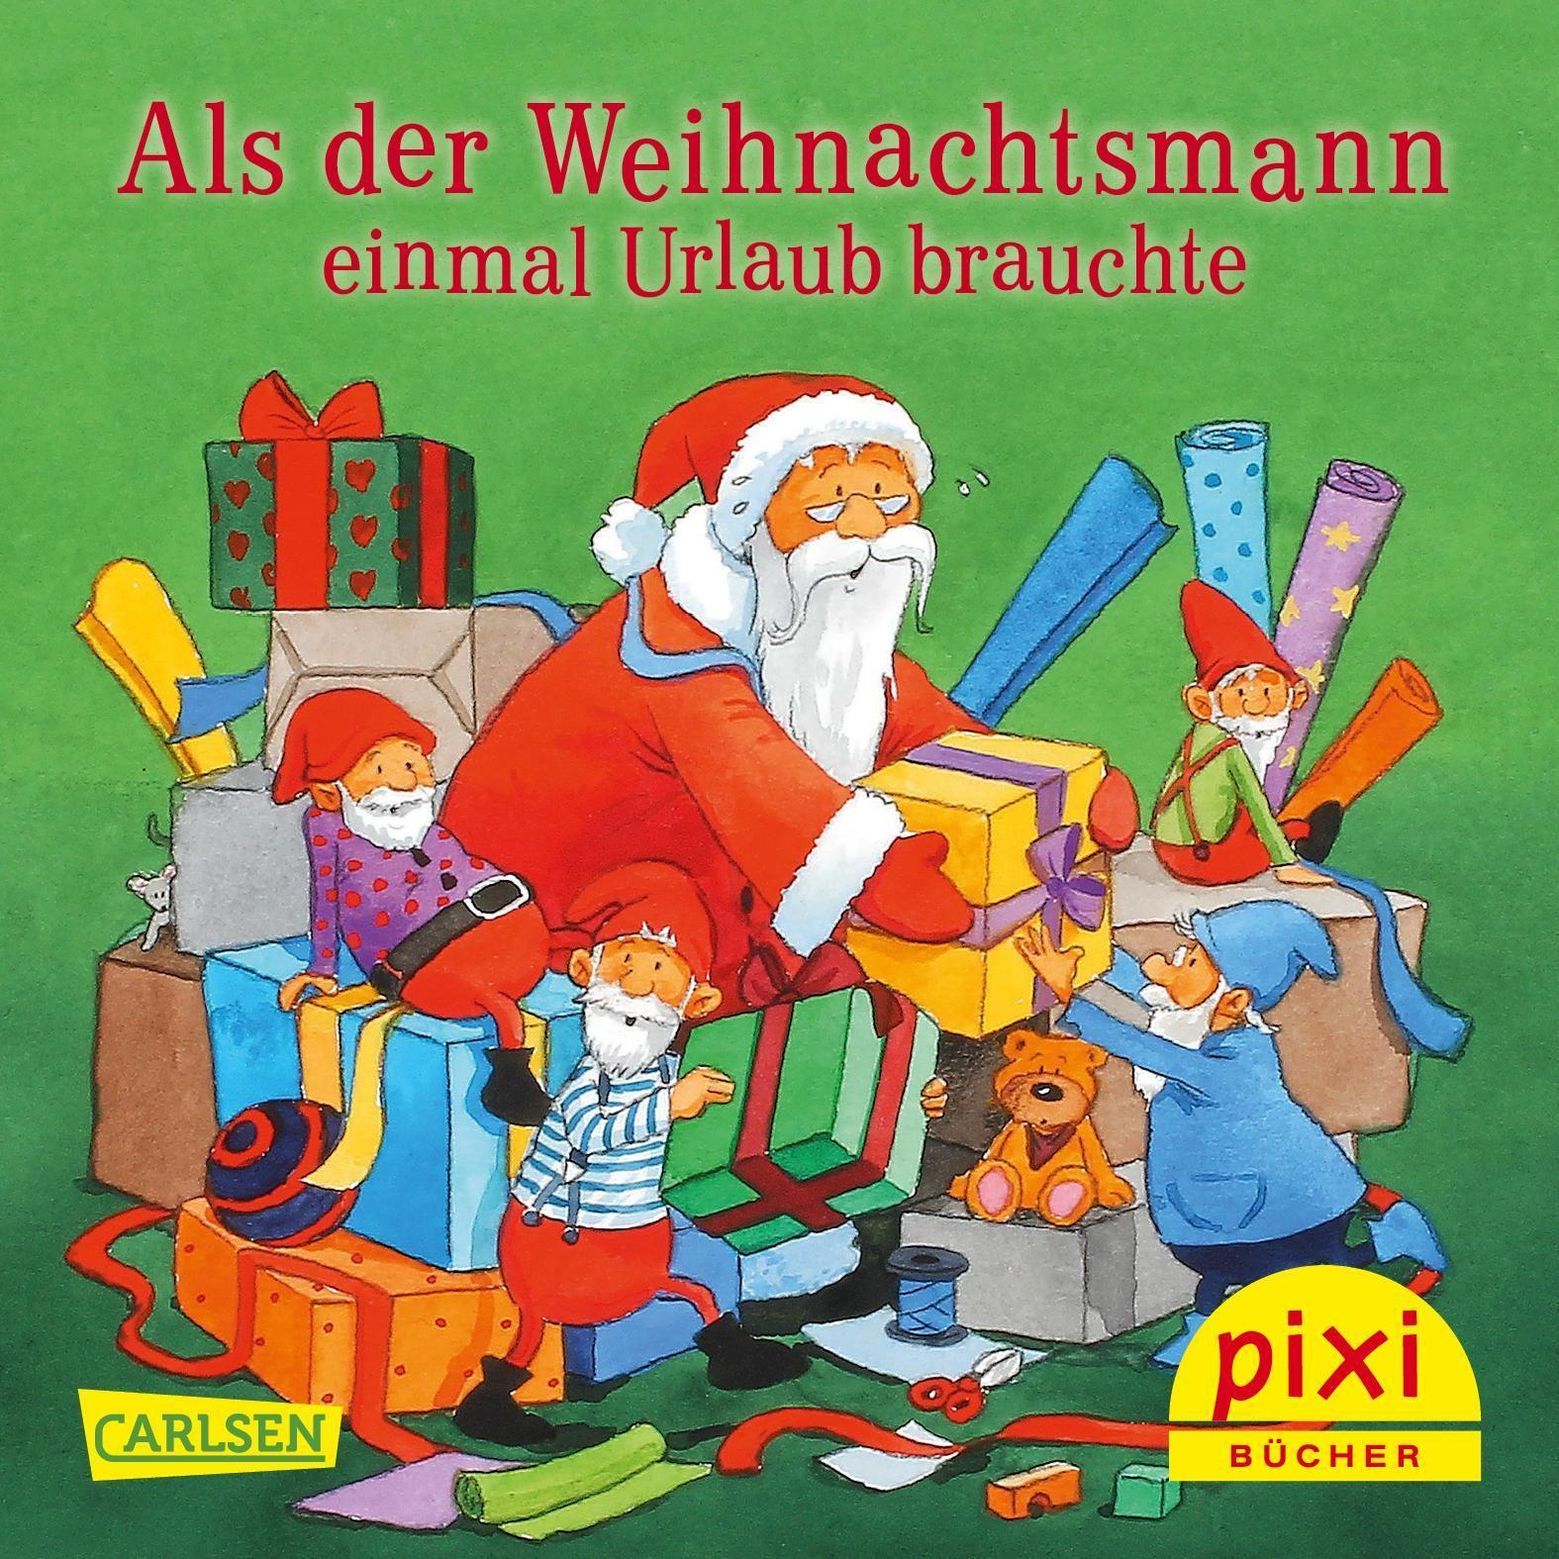 Pixi Bücher: Pixi Adventskalender in Weihnachtsbaumform 2019, 24 Teile Buch  versandkostenfrei bei Weltbild.ch bestellen